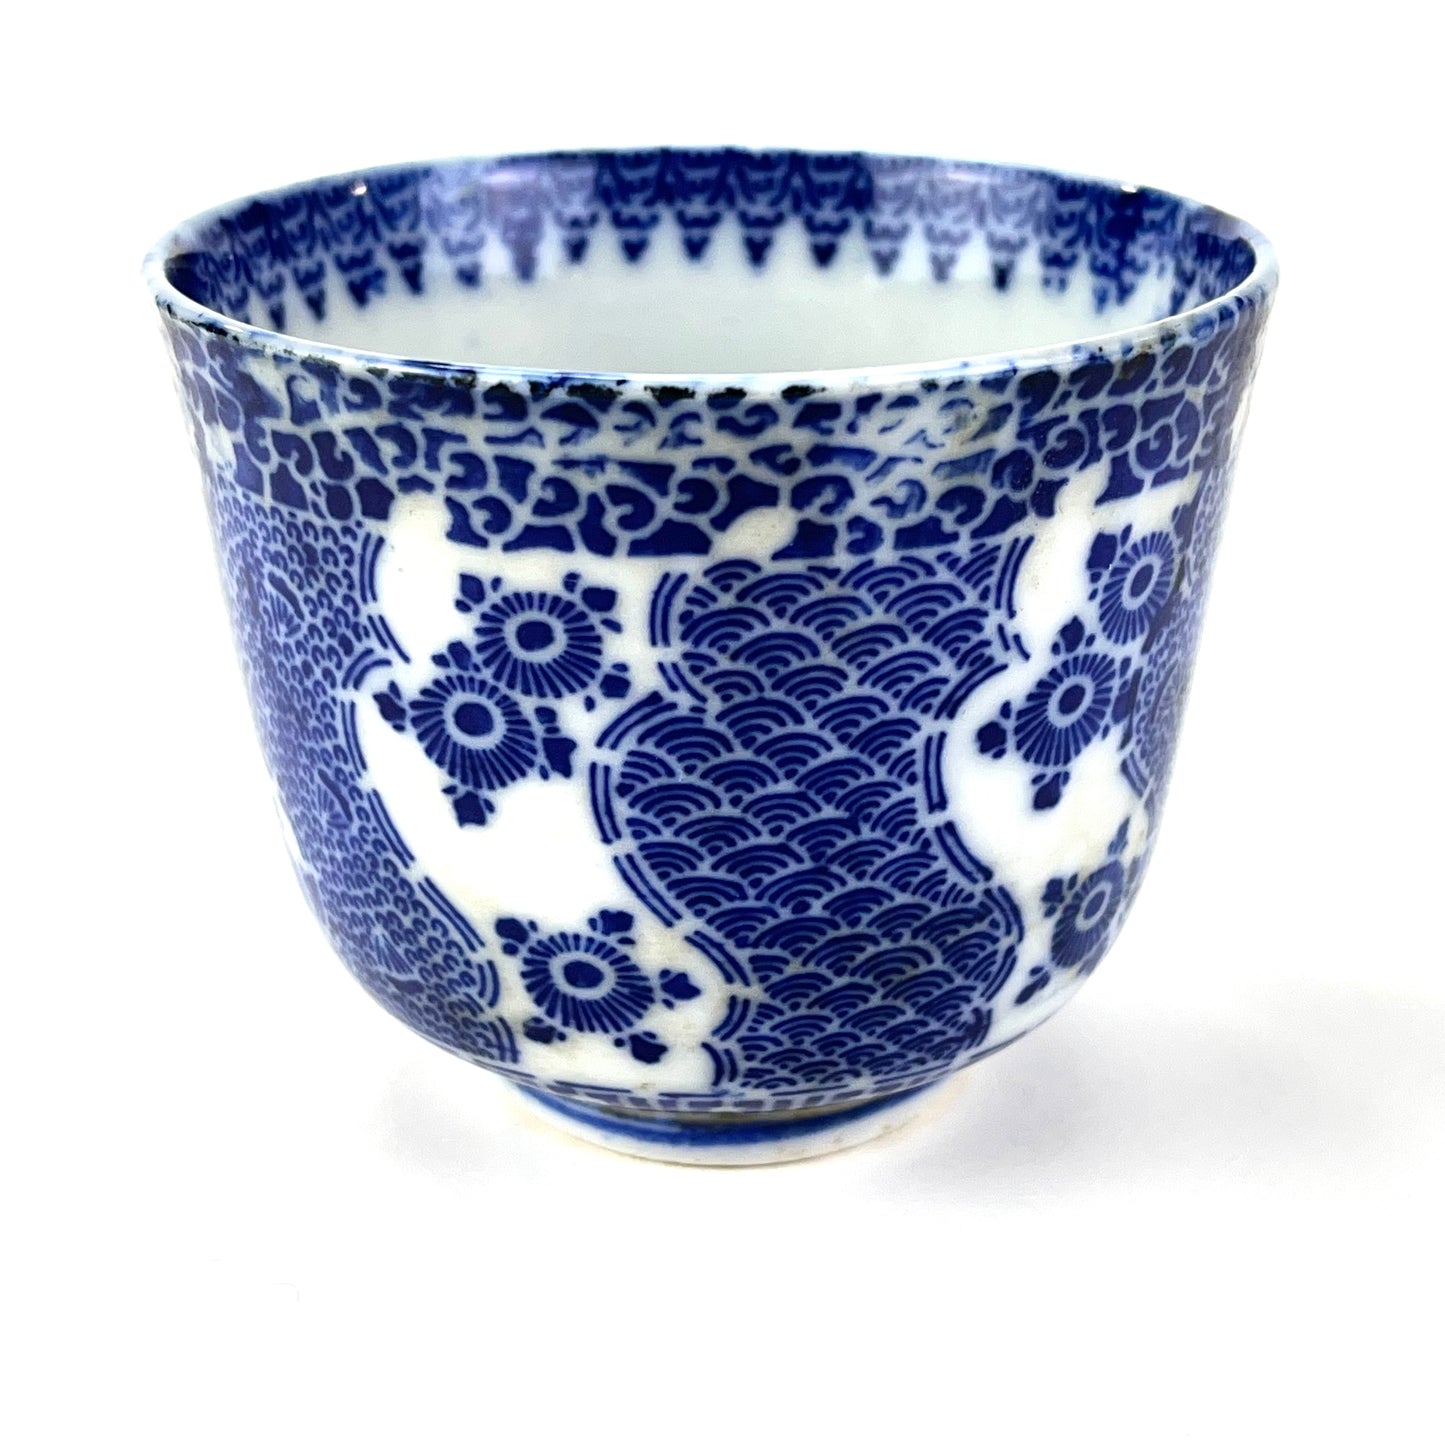 Antique Japanese Meij Era c1910 stenciled Imari Sobachoko Ceramic